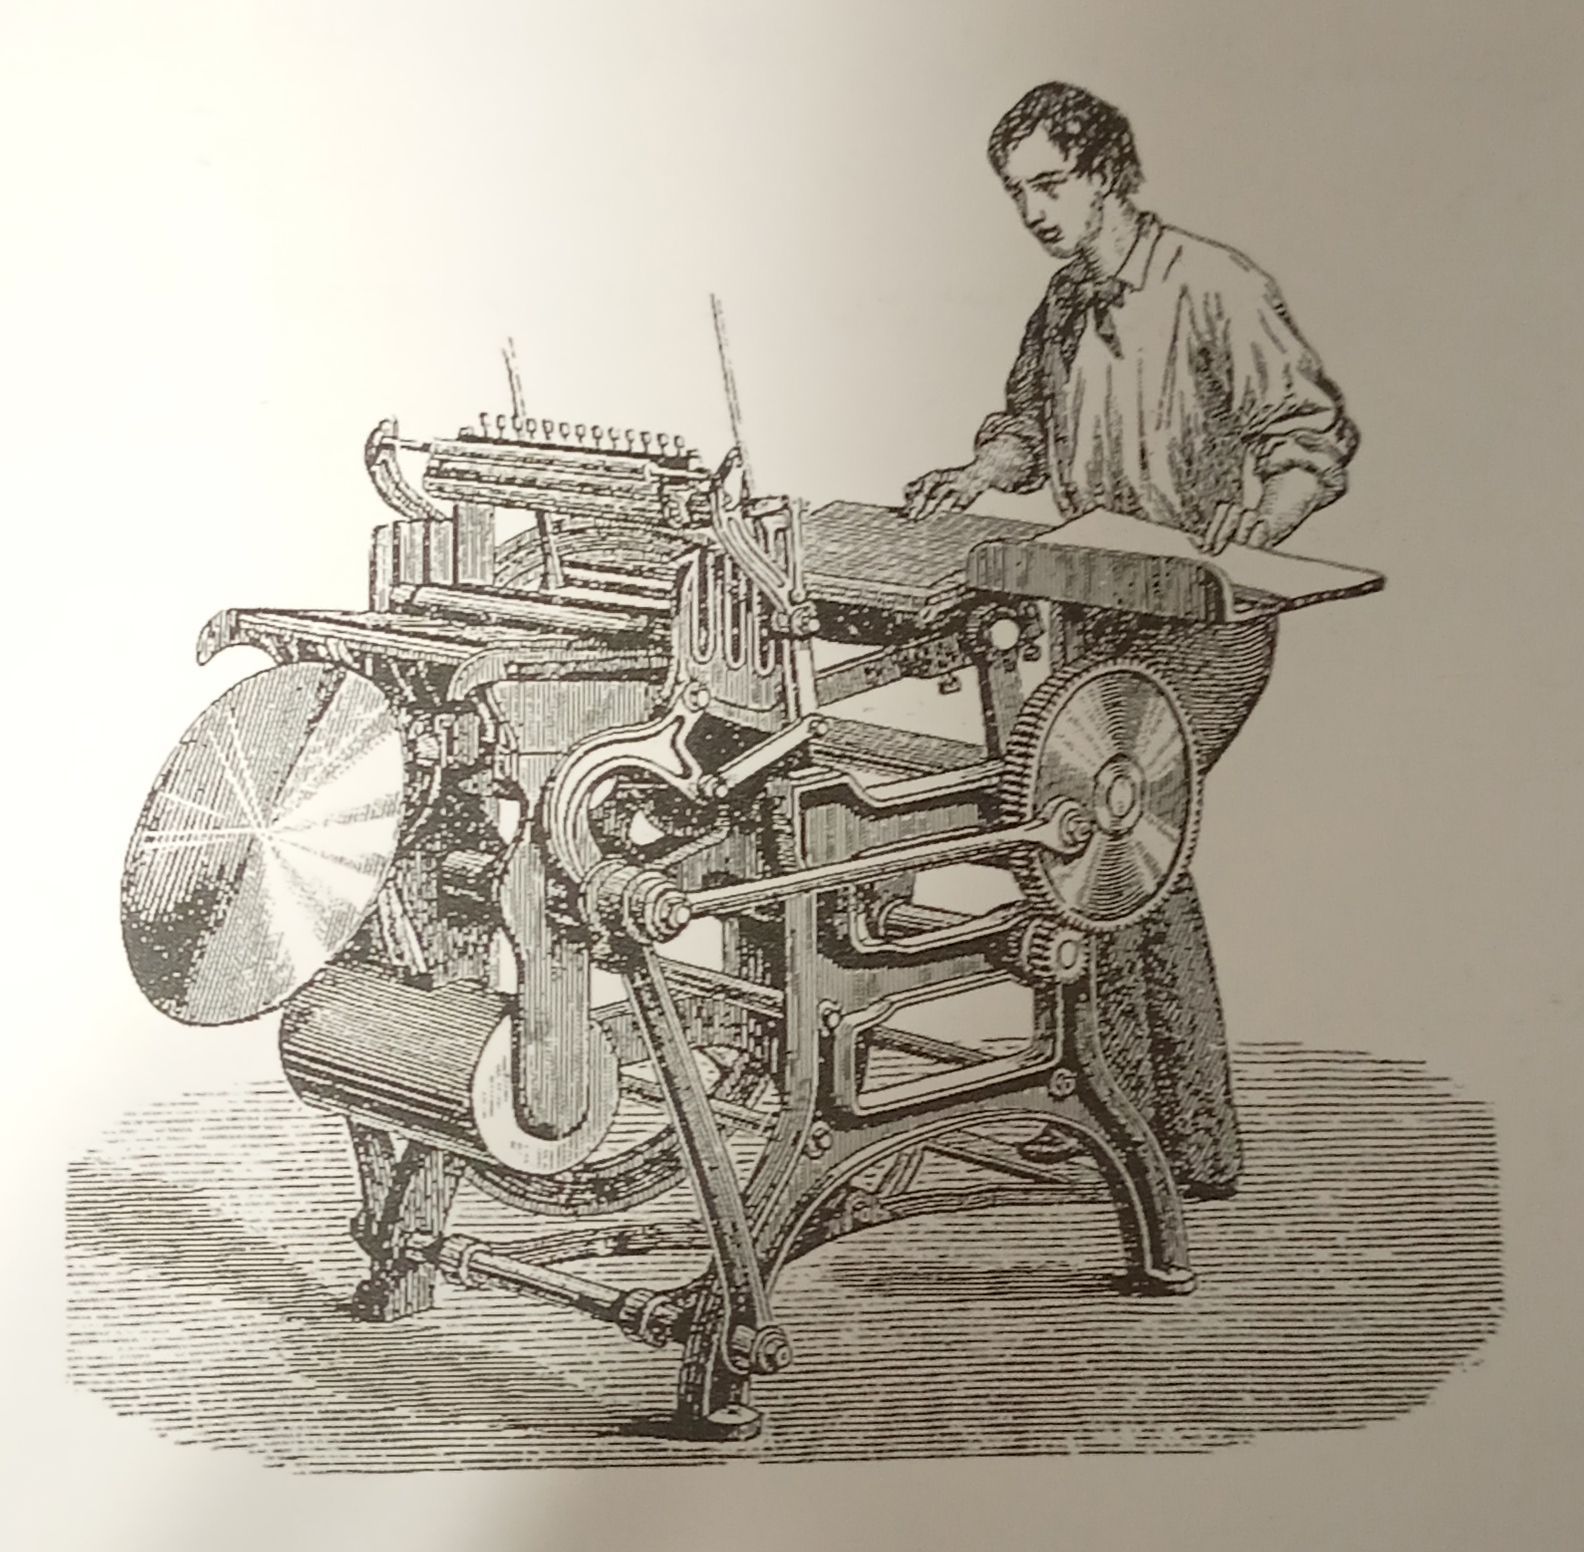 تاریخچه چاپ در قرن 21 دستگاه چاپ پدالی